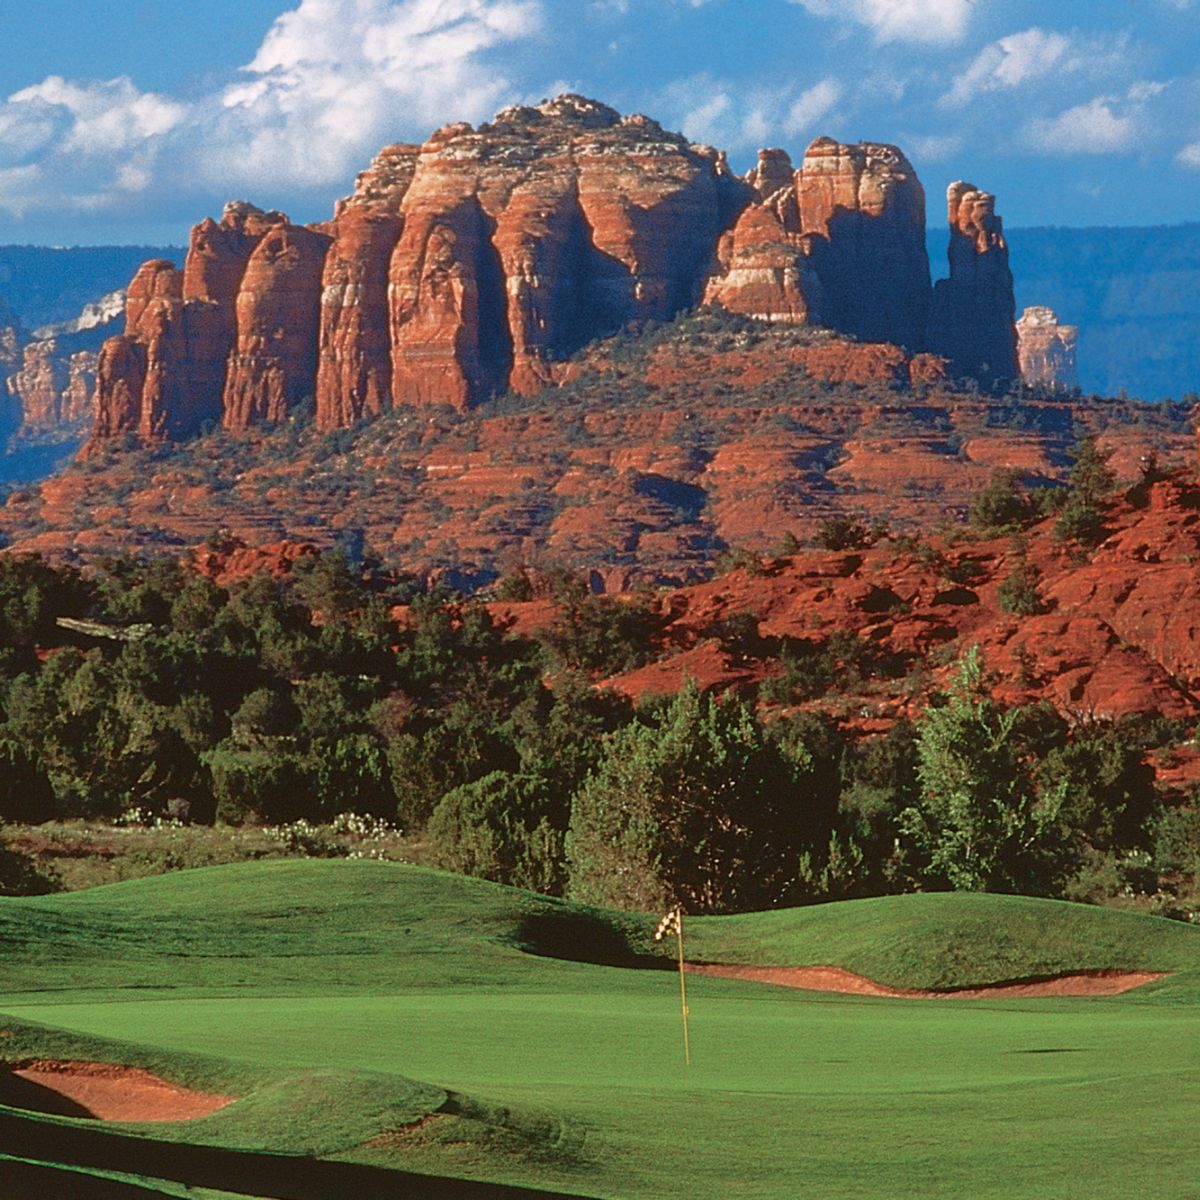 Campo para practicar golf en Sedona, Arizona.